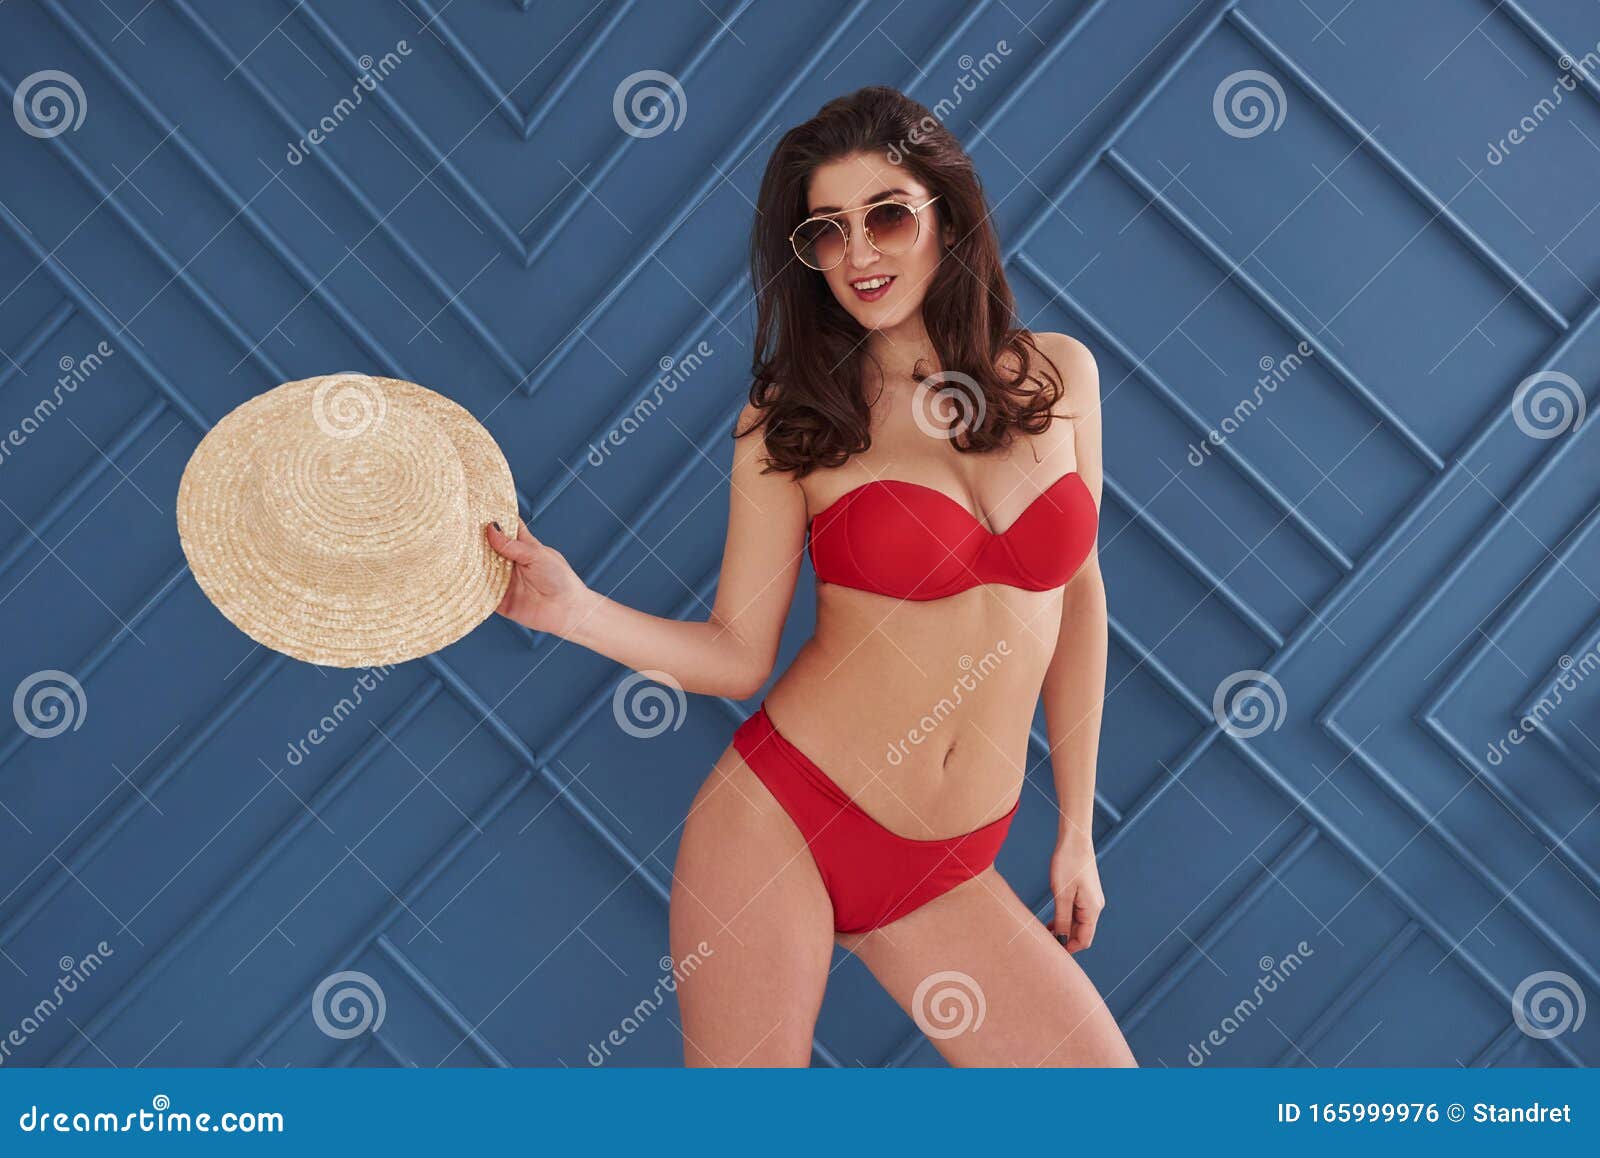 Sacándose El Sombrero Hermosa Y Elegante En Bikini Se Para Y Posa En Estudio Foto de archivo - de ocasional, atractivo: 165999976